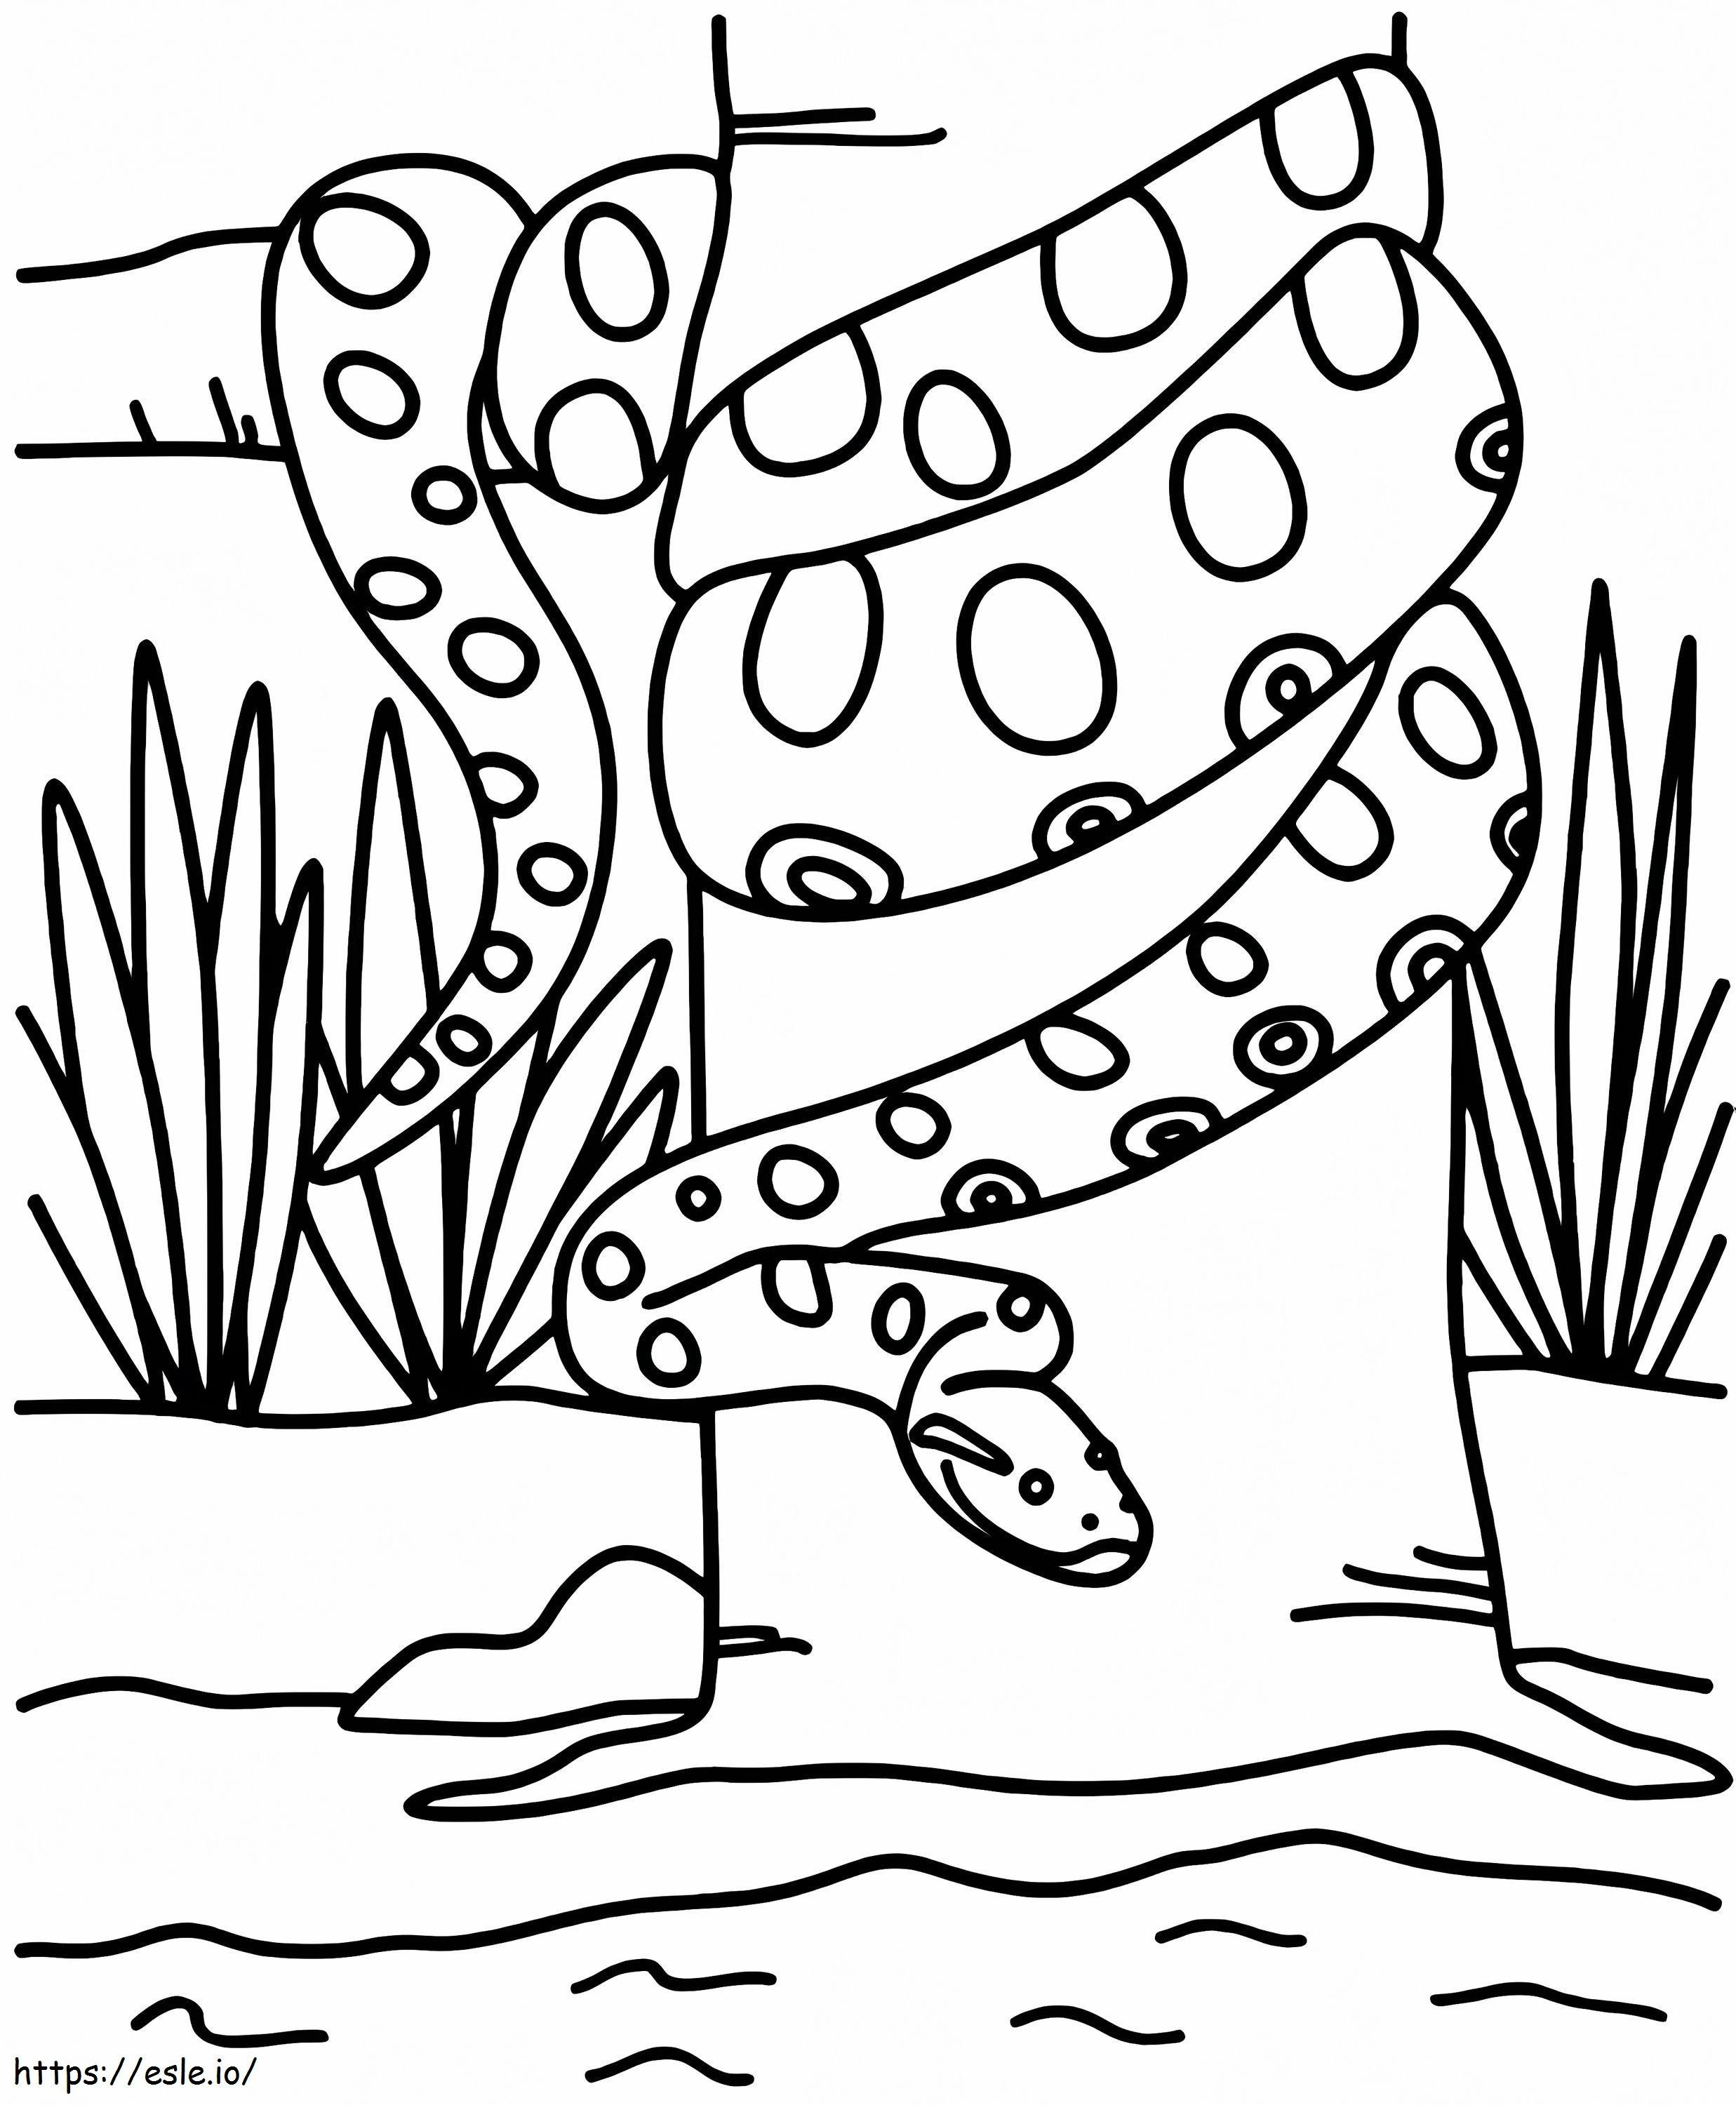 Anaconda Imprimible para colorear